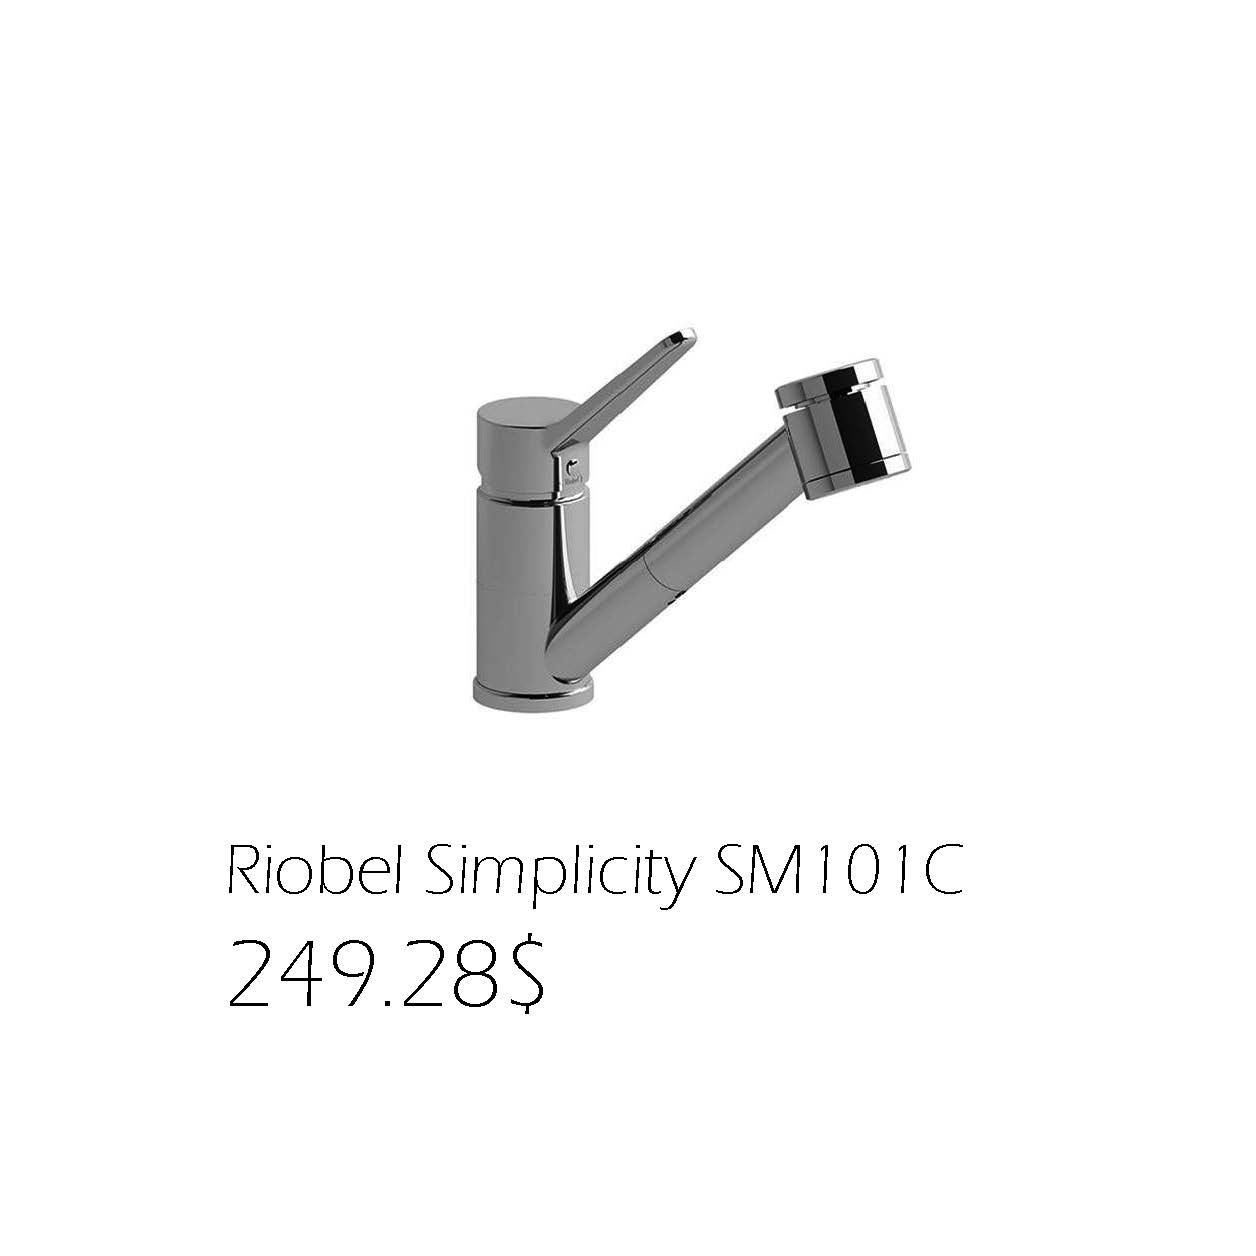 249.28$Riobel Simplicity SM101C